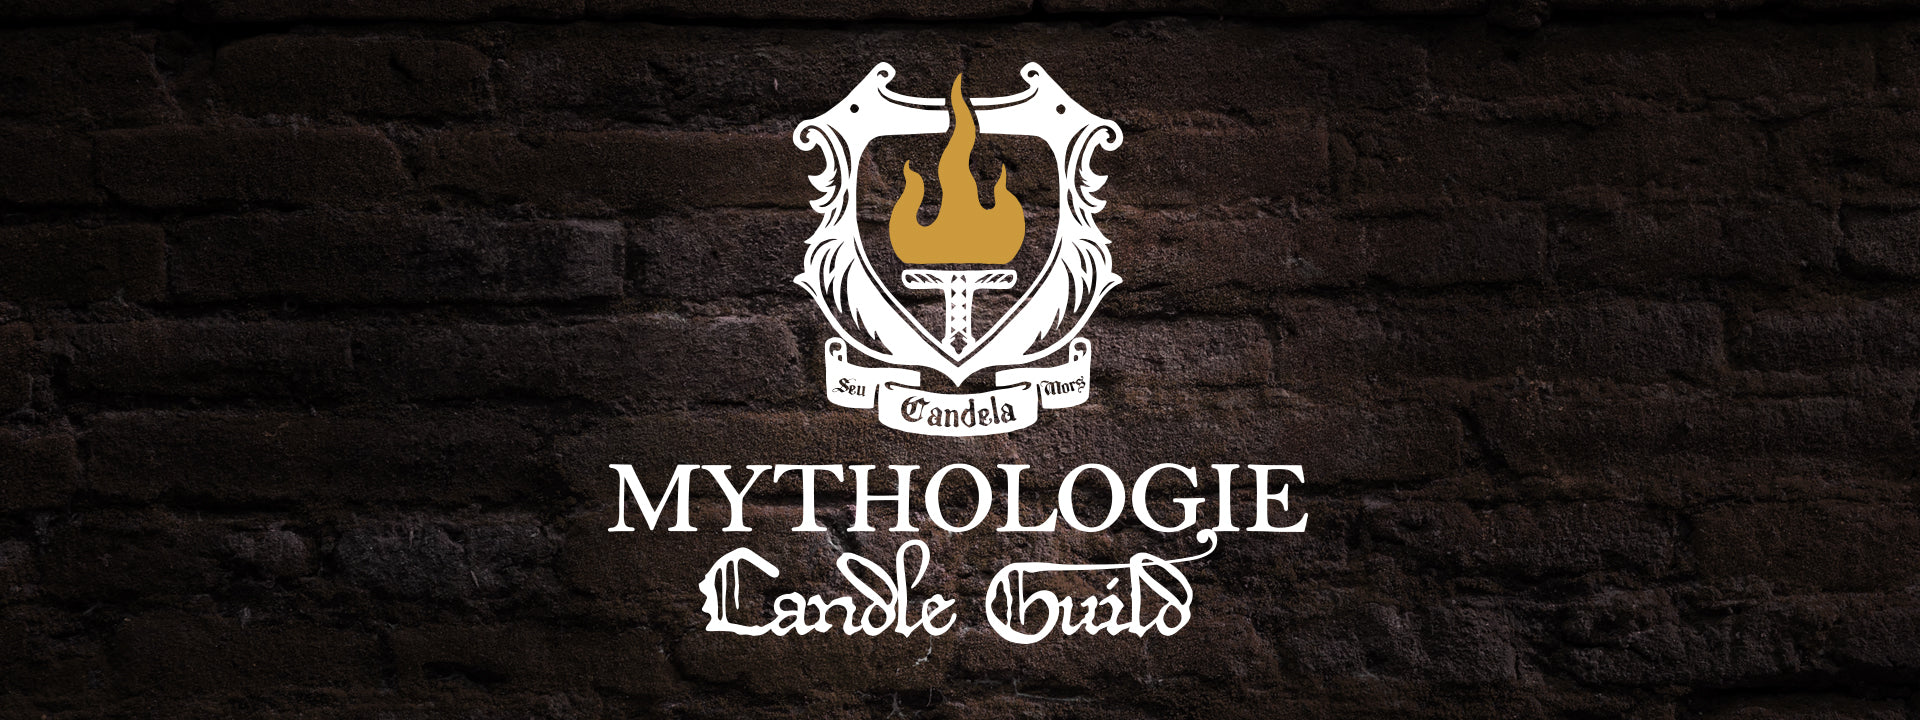 Mythologie Candle Guild